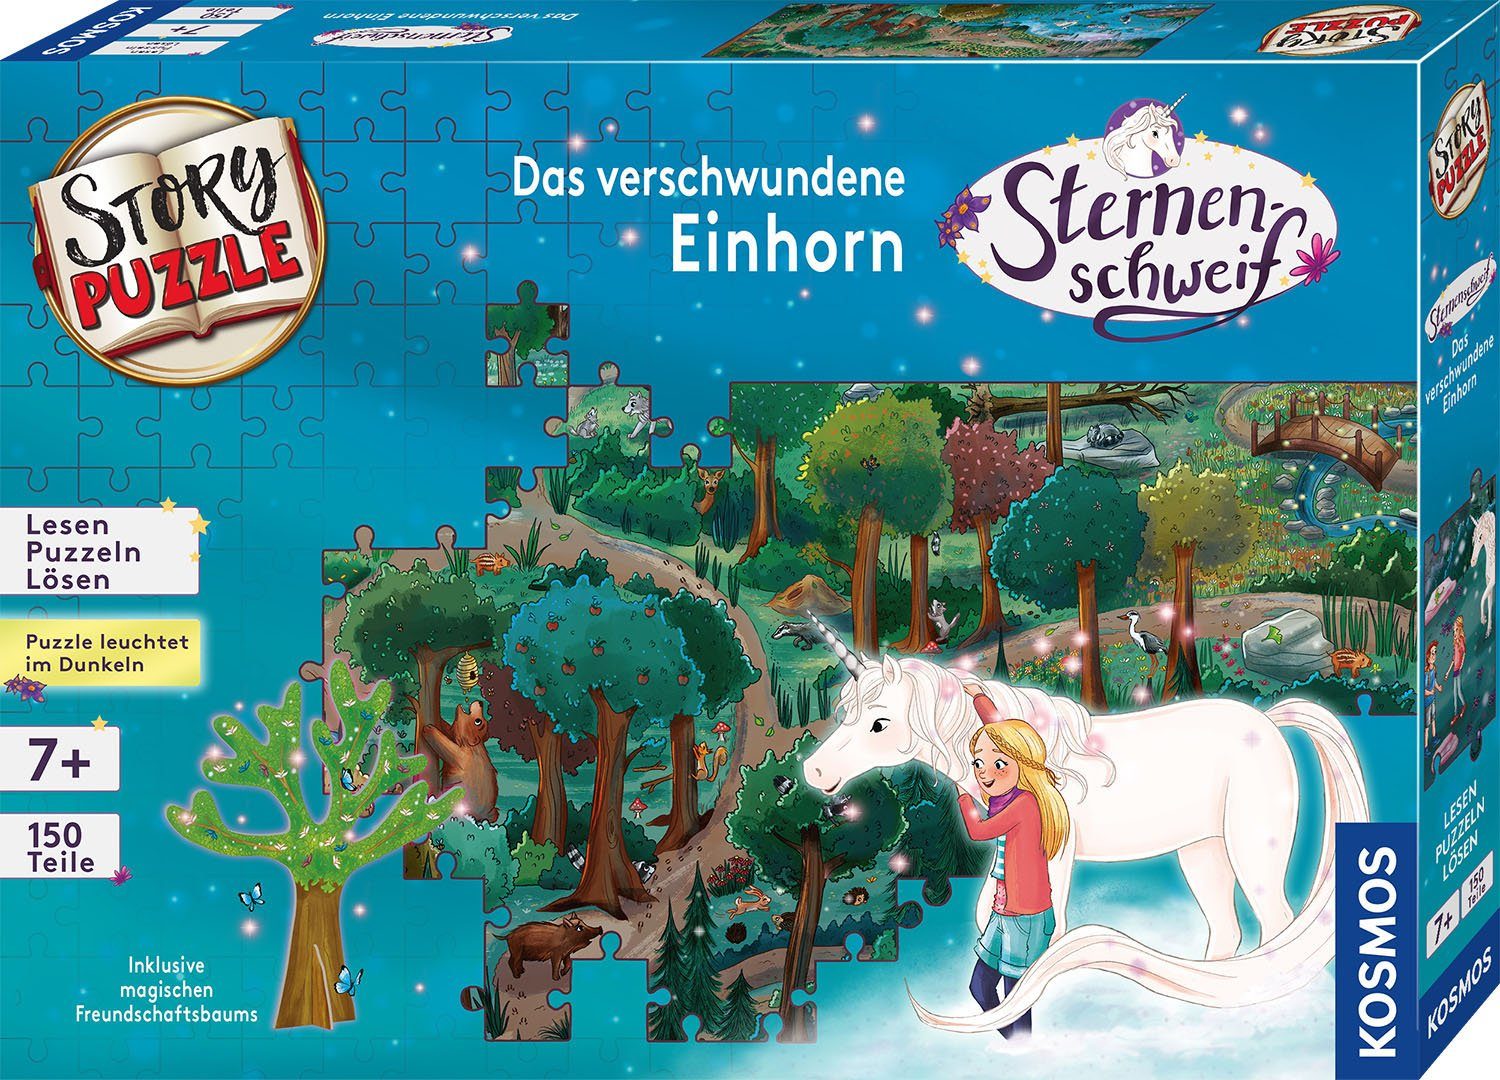 Germany 150 Kosmos Puzzle Made StoryPuzzle, Sternenschweif, verschwundene Das Einhorn, in Puzzleteile,